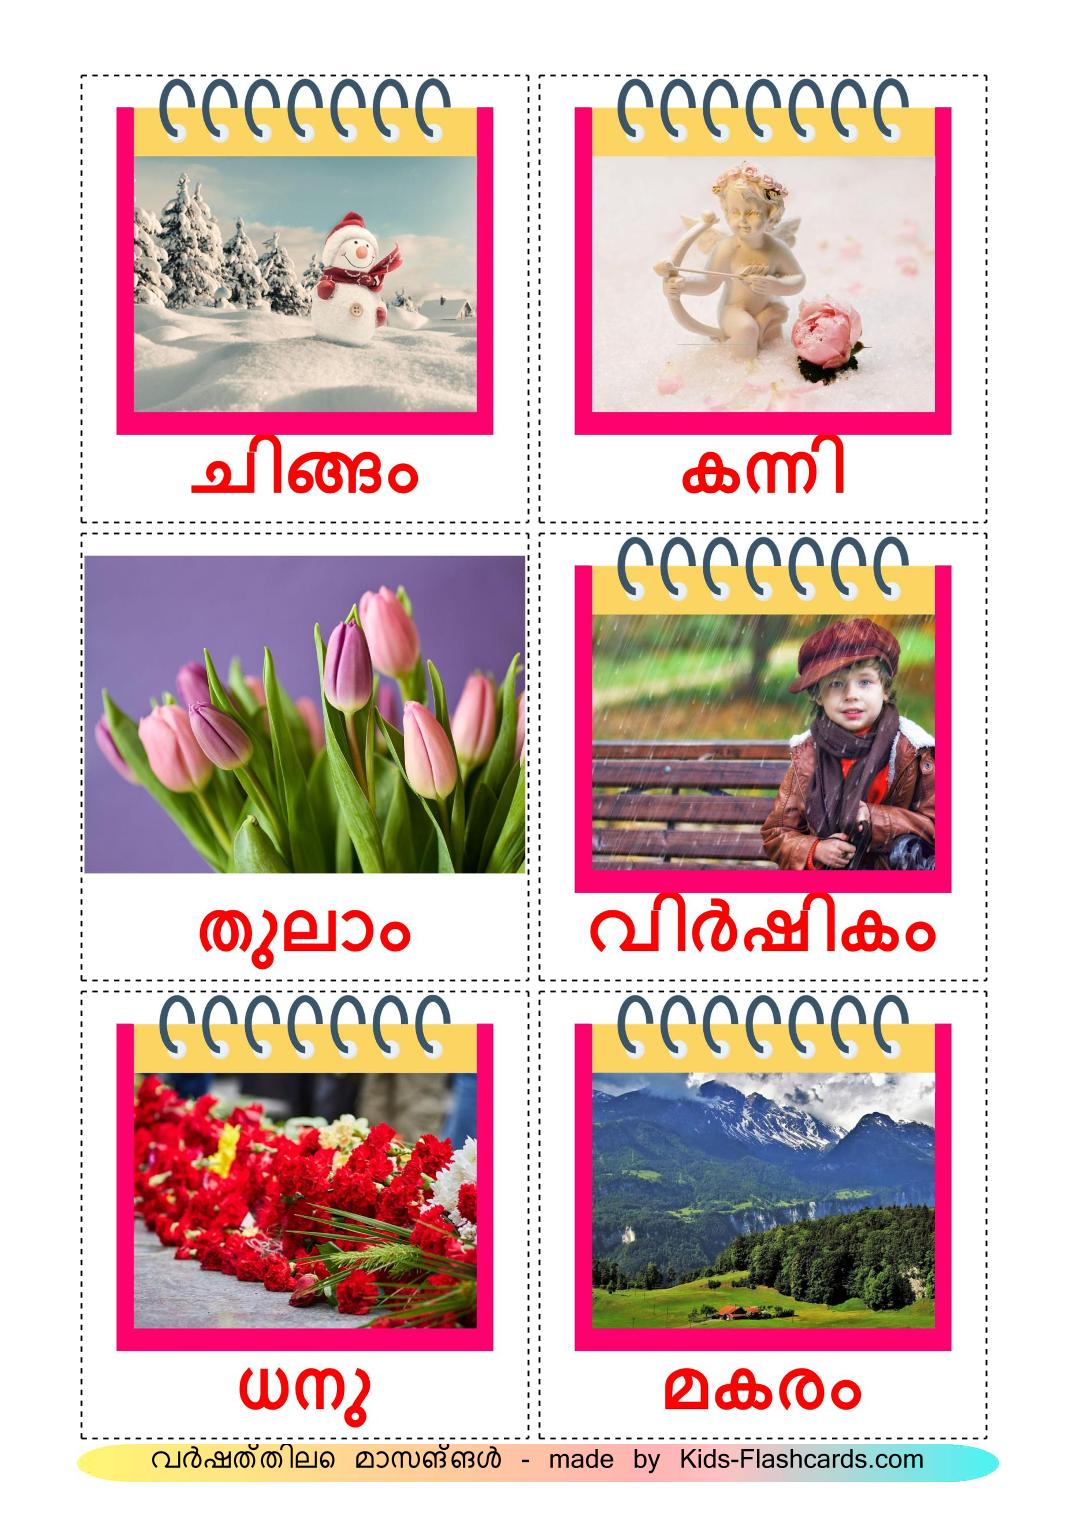 Meses do ano - 12 Flashcards malayalames gratuitos para impressão